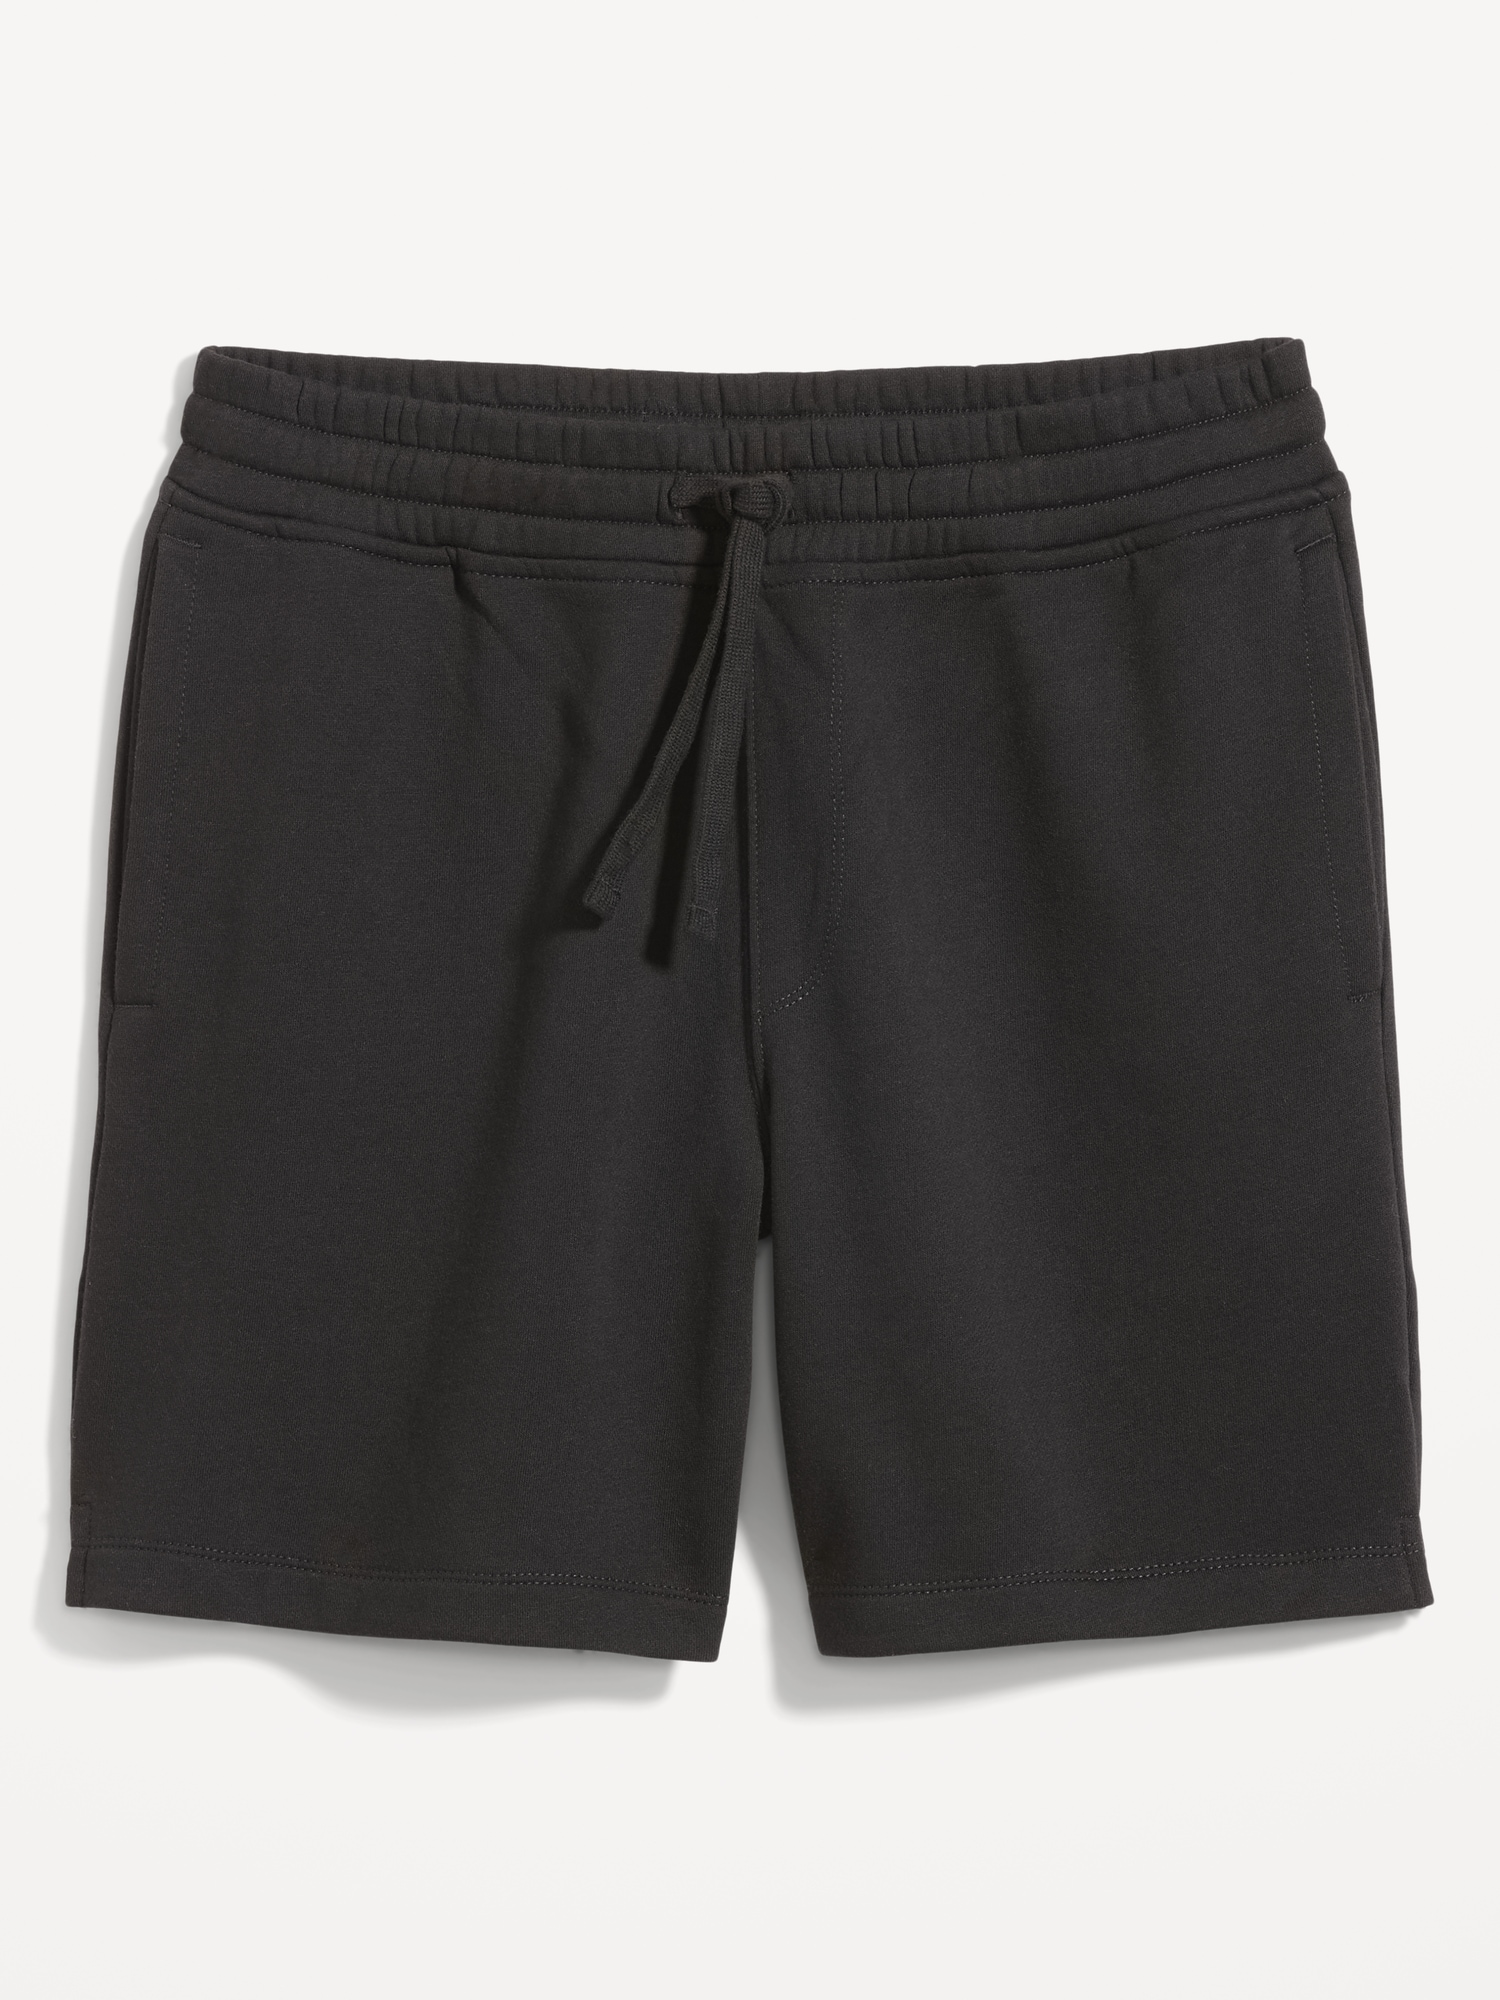 Hanes Originals Men's Fleece Sweat Shorts, 8